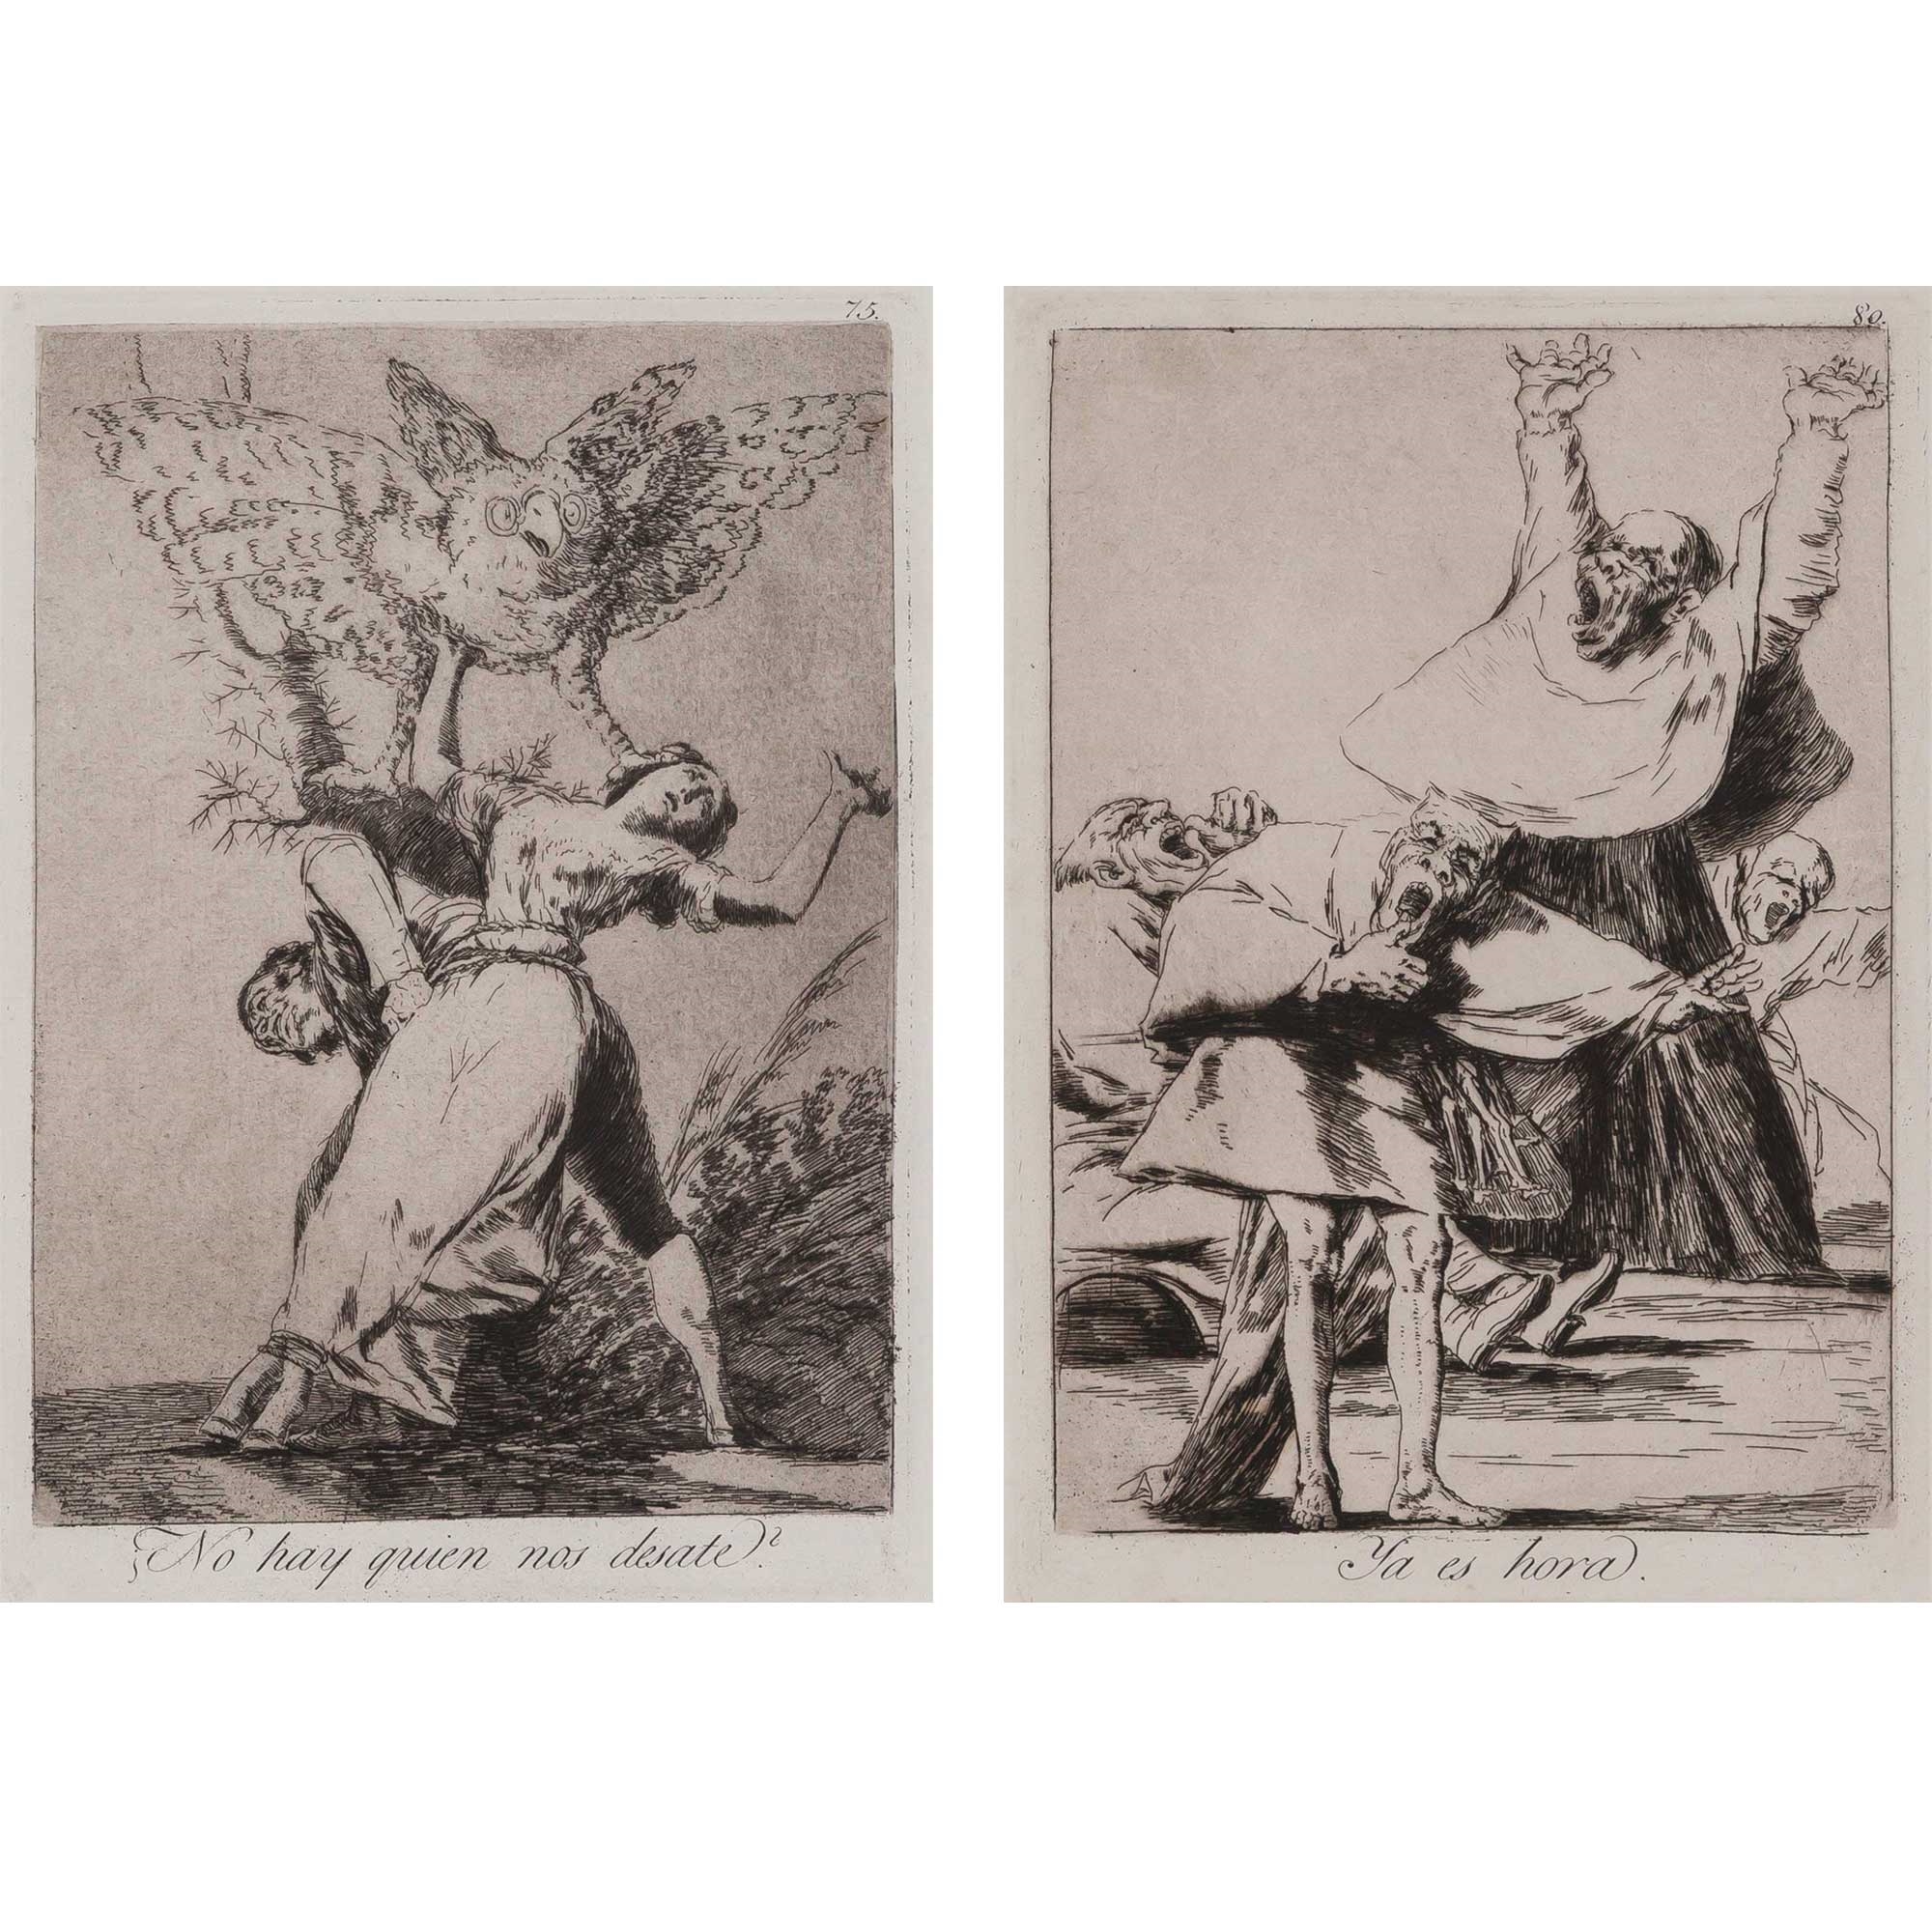 TWO WORKS: NO HAY QUIEN NOS DESATE?; YA ES HORA (DELTEIL 112, 117; H. 110; 115) by Francisco José de Goya y Lucientes, circa 1799